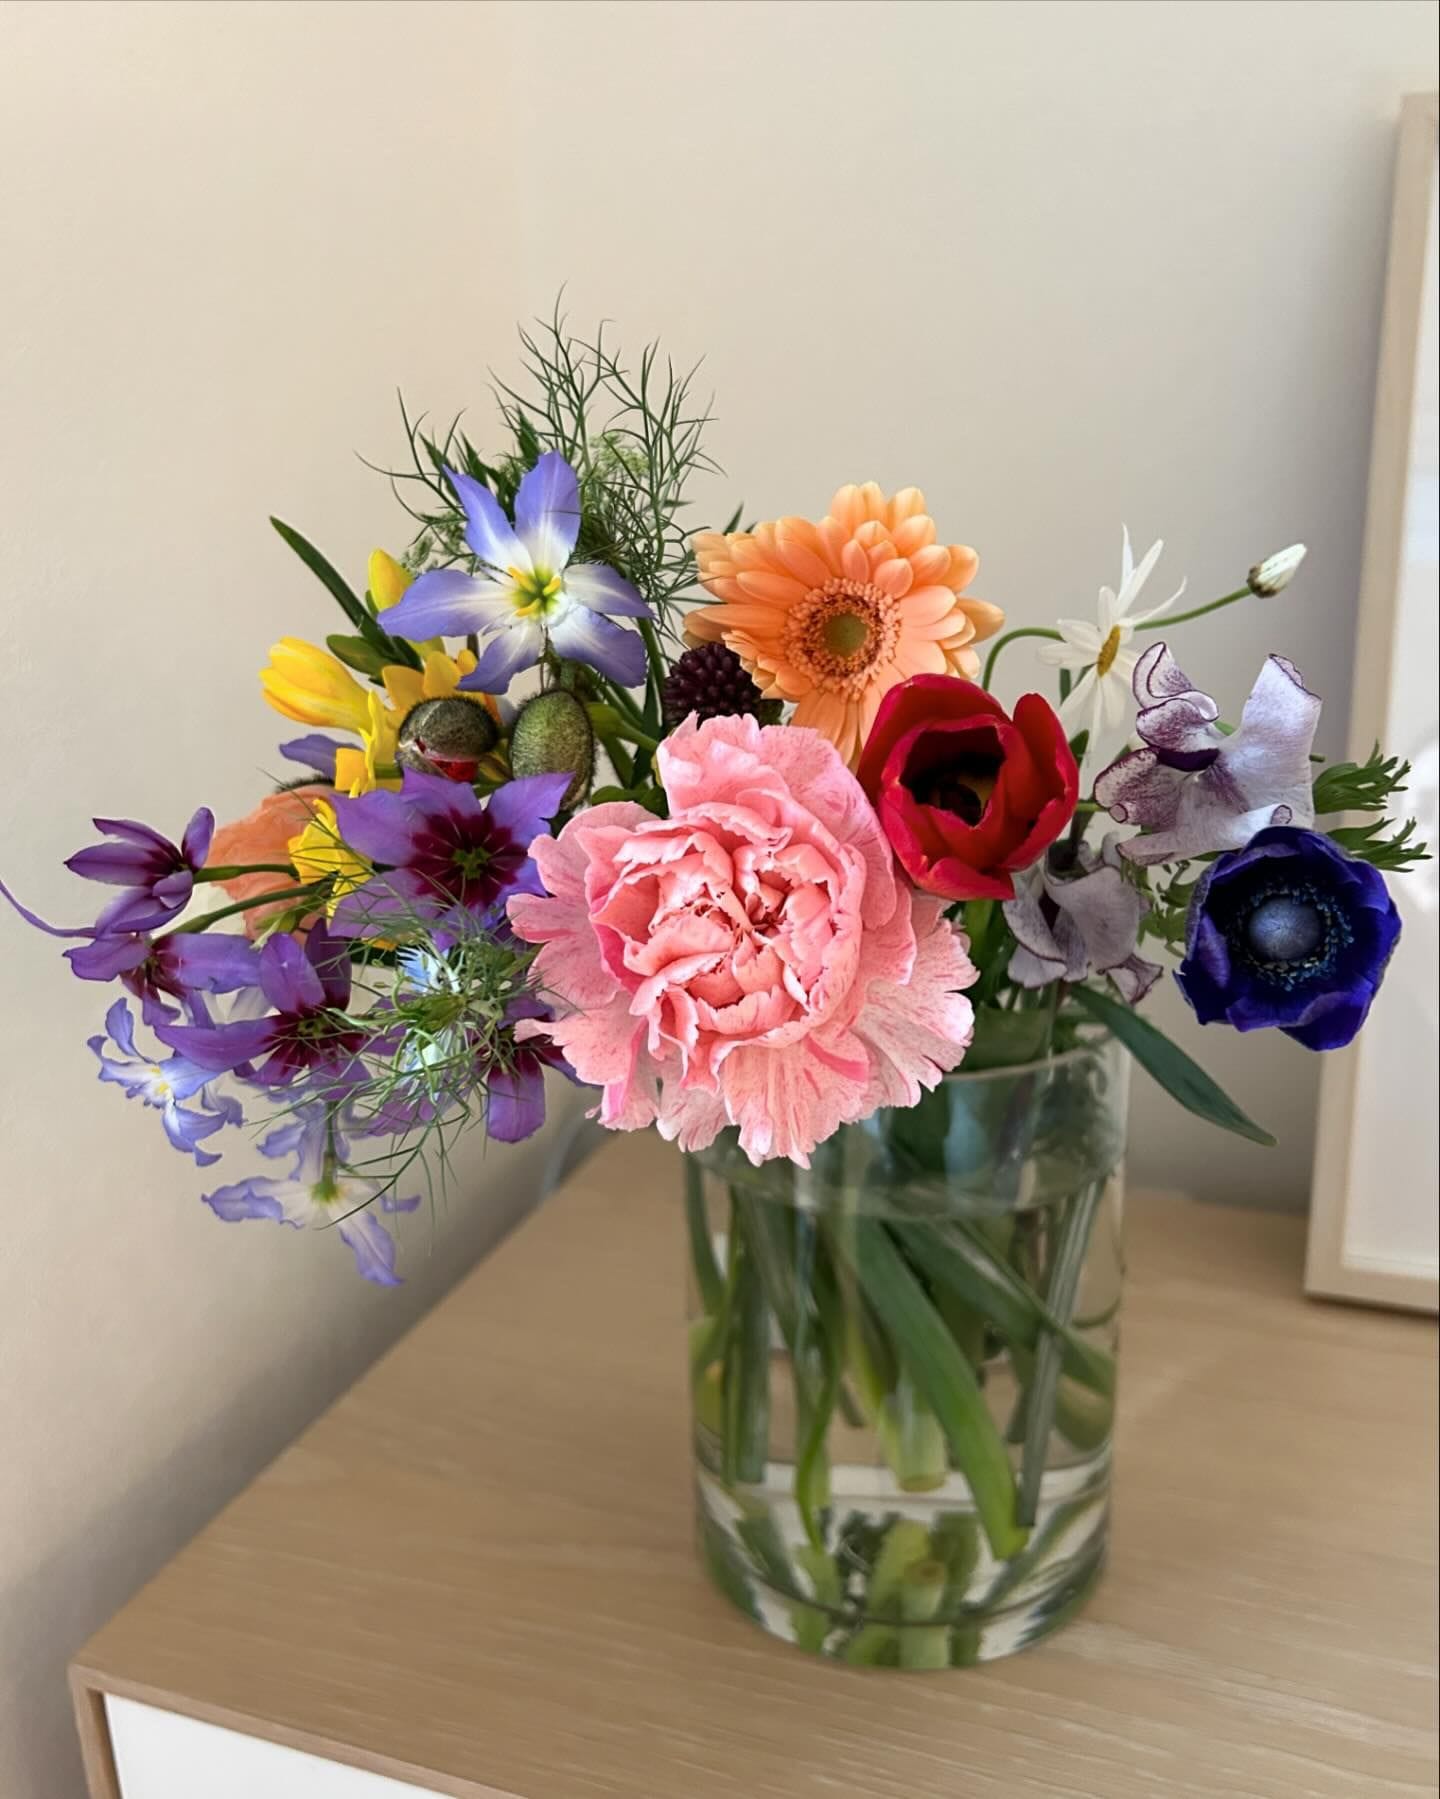 アプリのお花屋さん「FLOWER」で最近、お花をよく買っています【LEE編集部のお買い物】